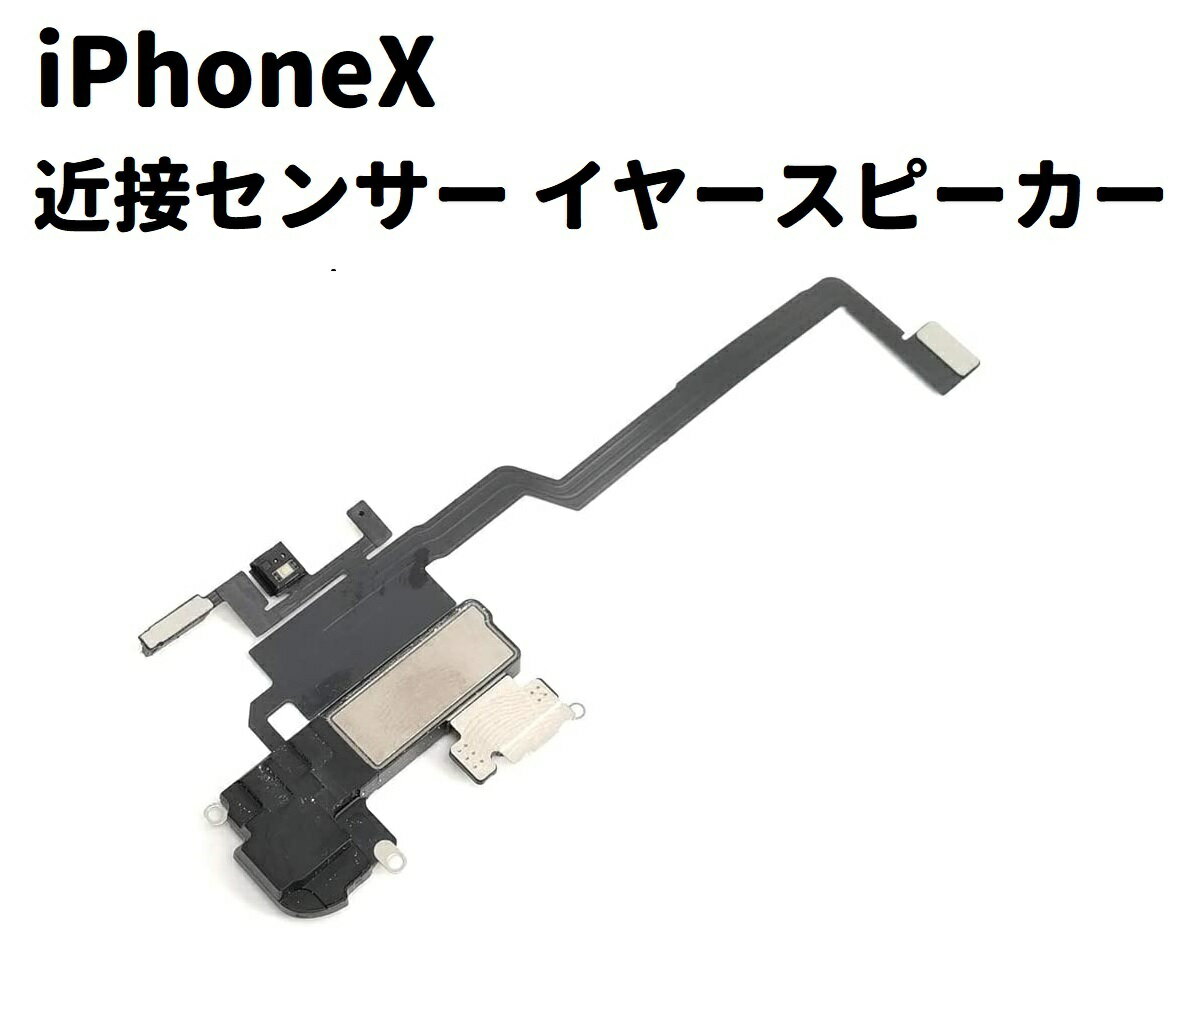  iPhone X 近接センサー イヤースピーカー フレックス ケーブル 修理 部品 パーツ